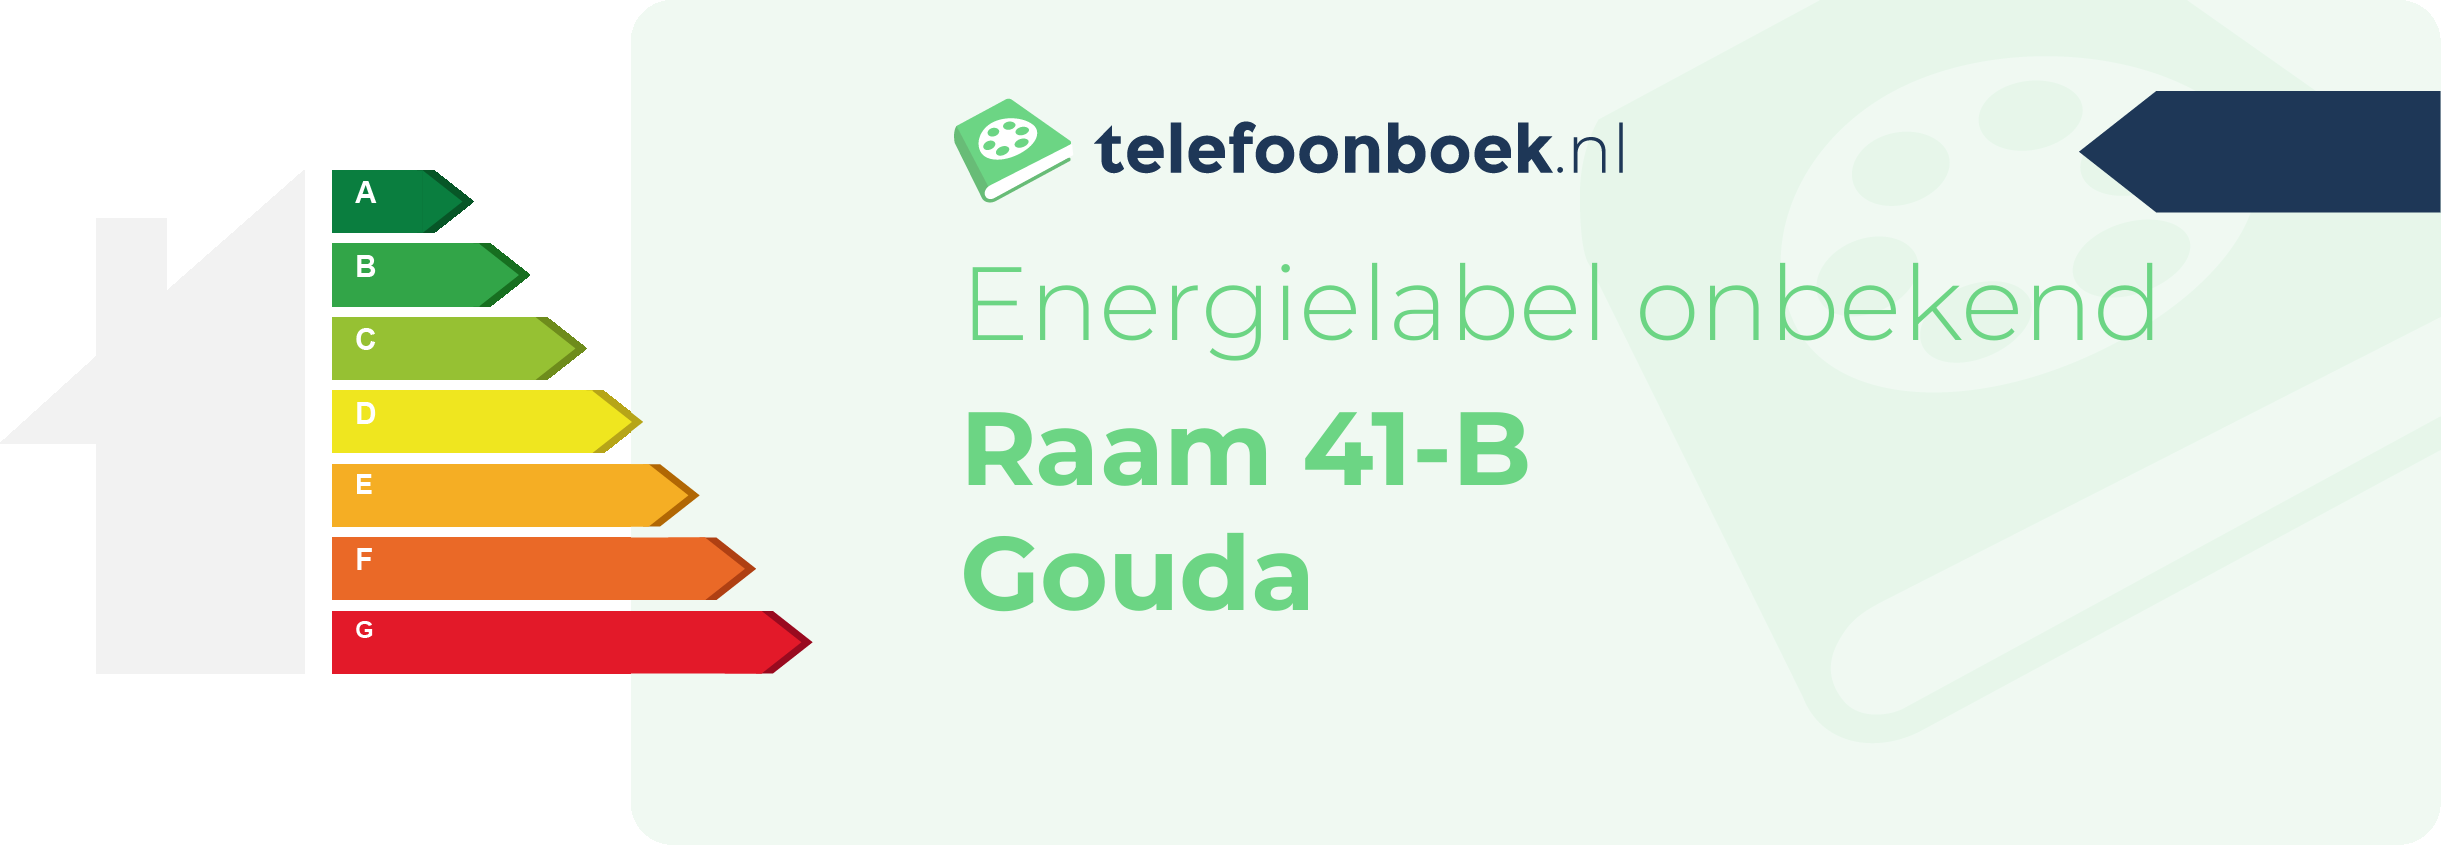 Energielabel Raam 41-B Gouda